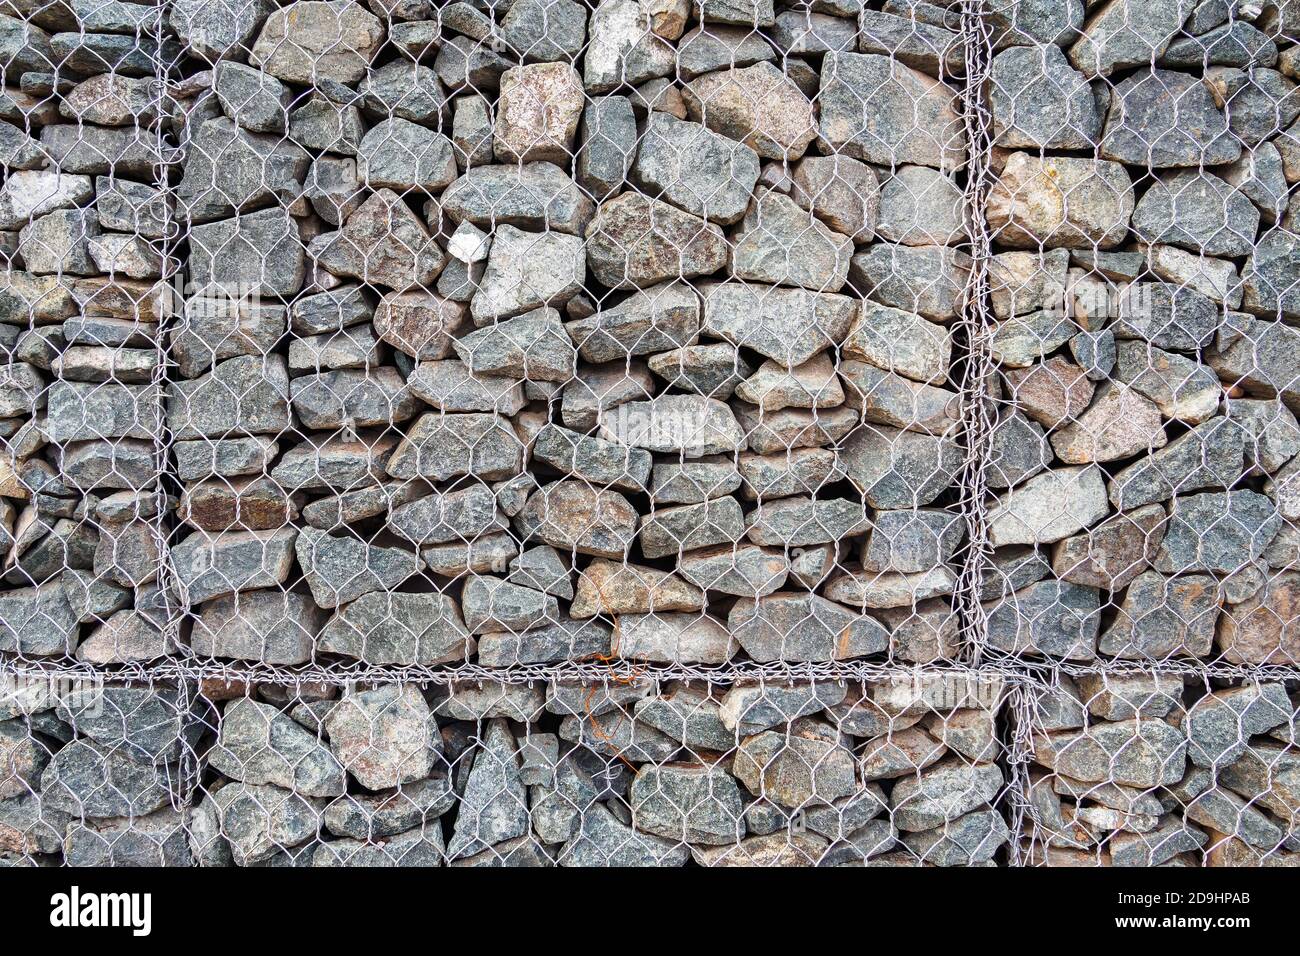 Nahaufnahme von Gabion, Zaun aus Steinen in Metallgeflecht für den Einsatz im Tiefbau, Straßenbau Landschaftsbau. Stockfoto